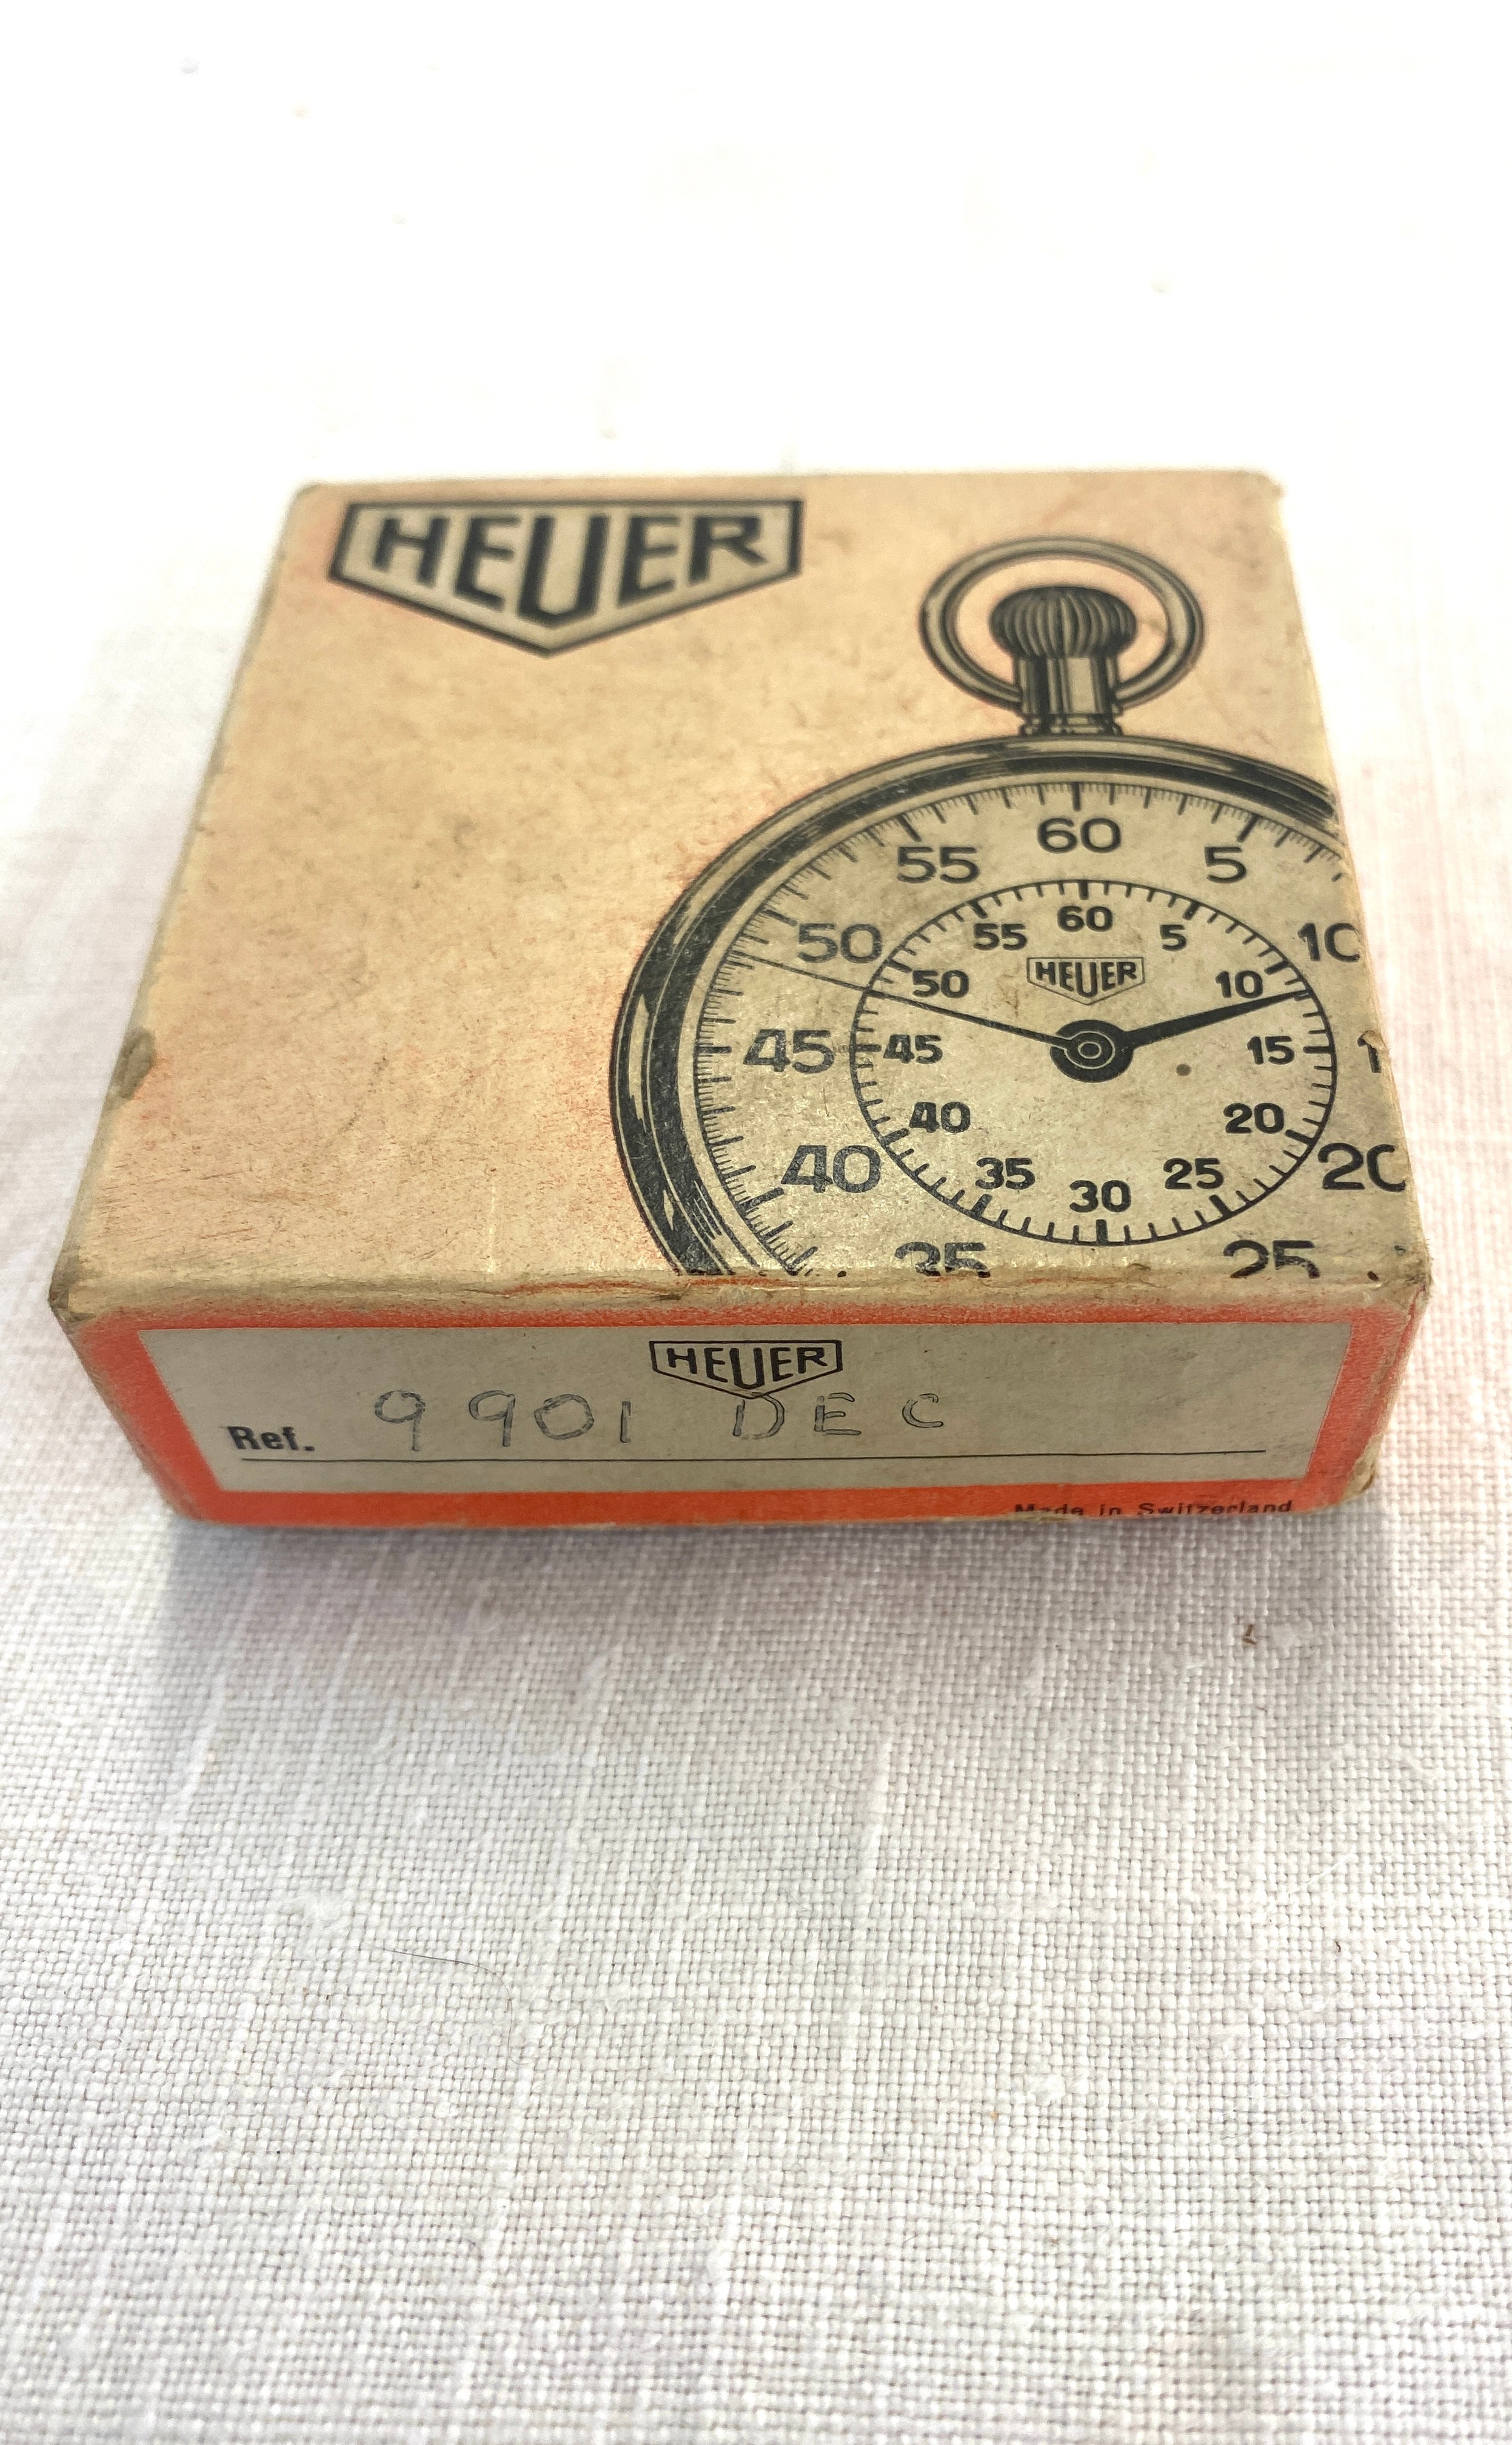 Cased heuer split second stopwatch, in original box - Image 3 of 4